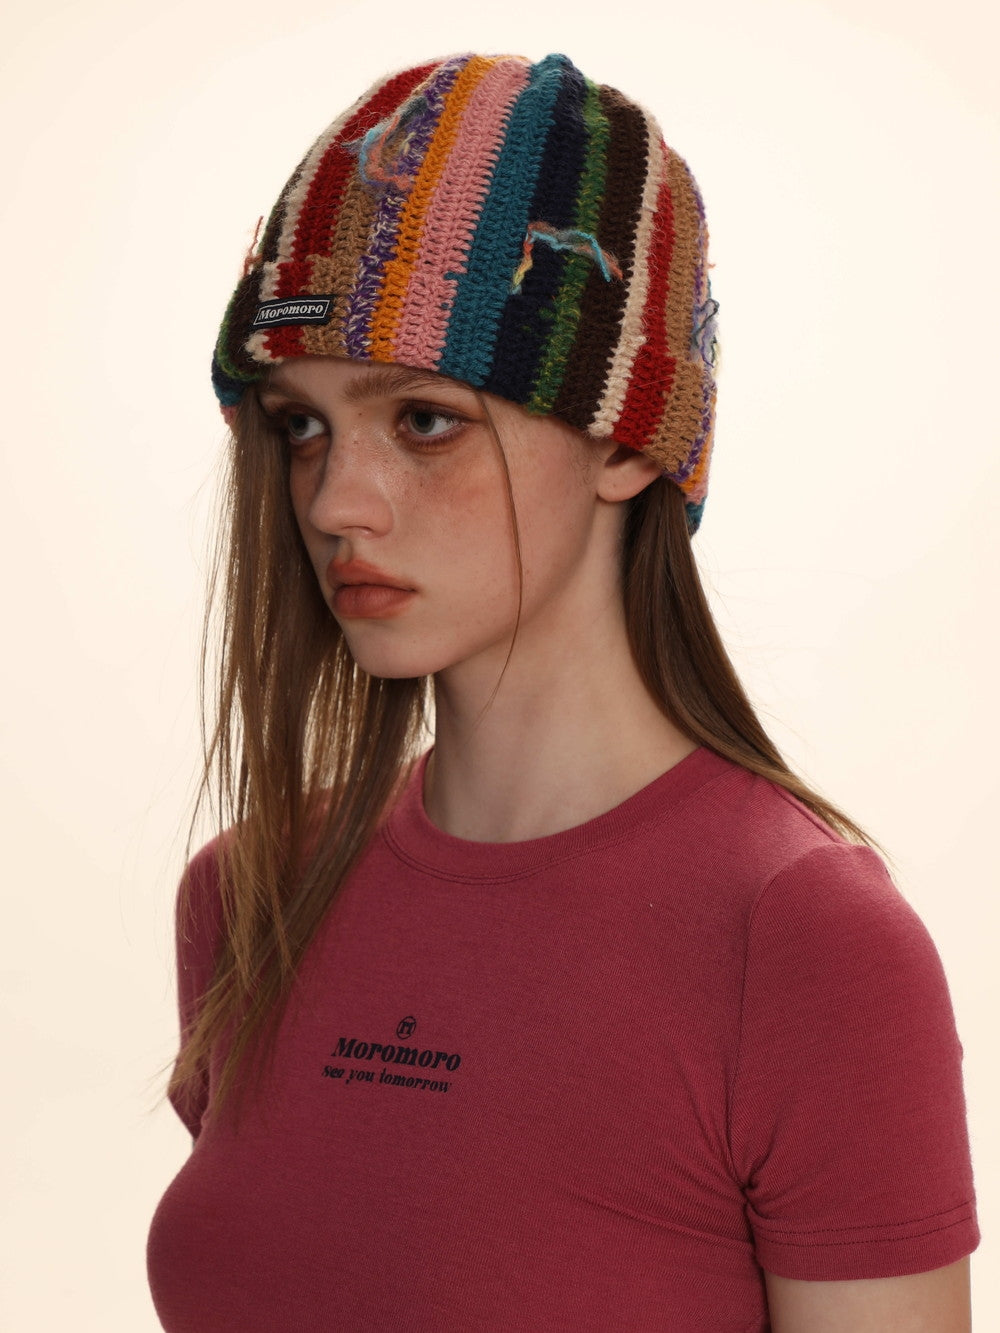 Retro Stripe Knit Colorful Hat - chiclara